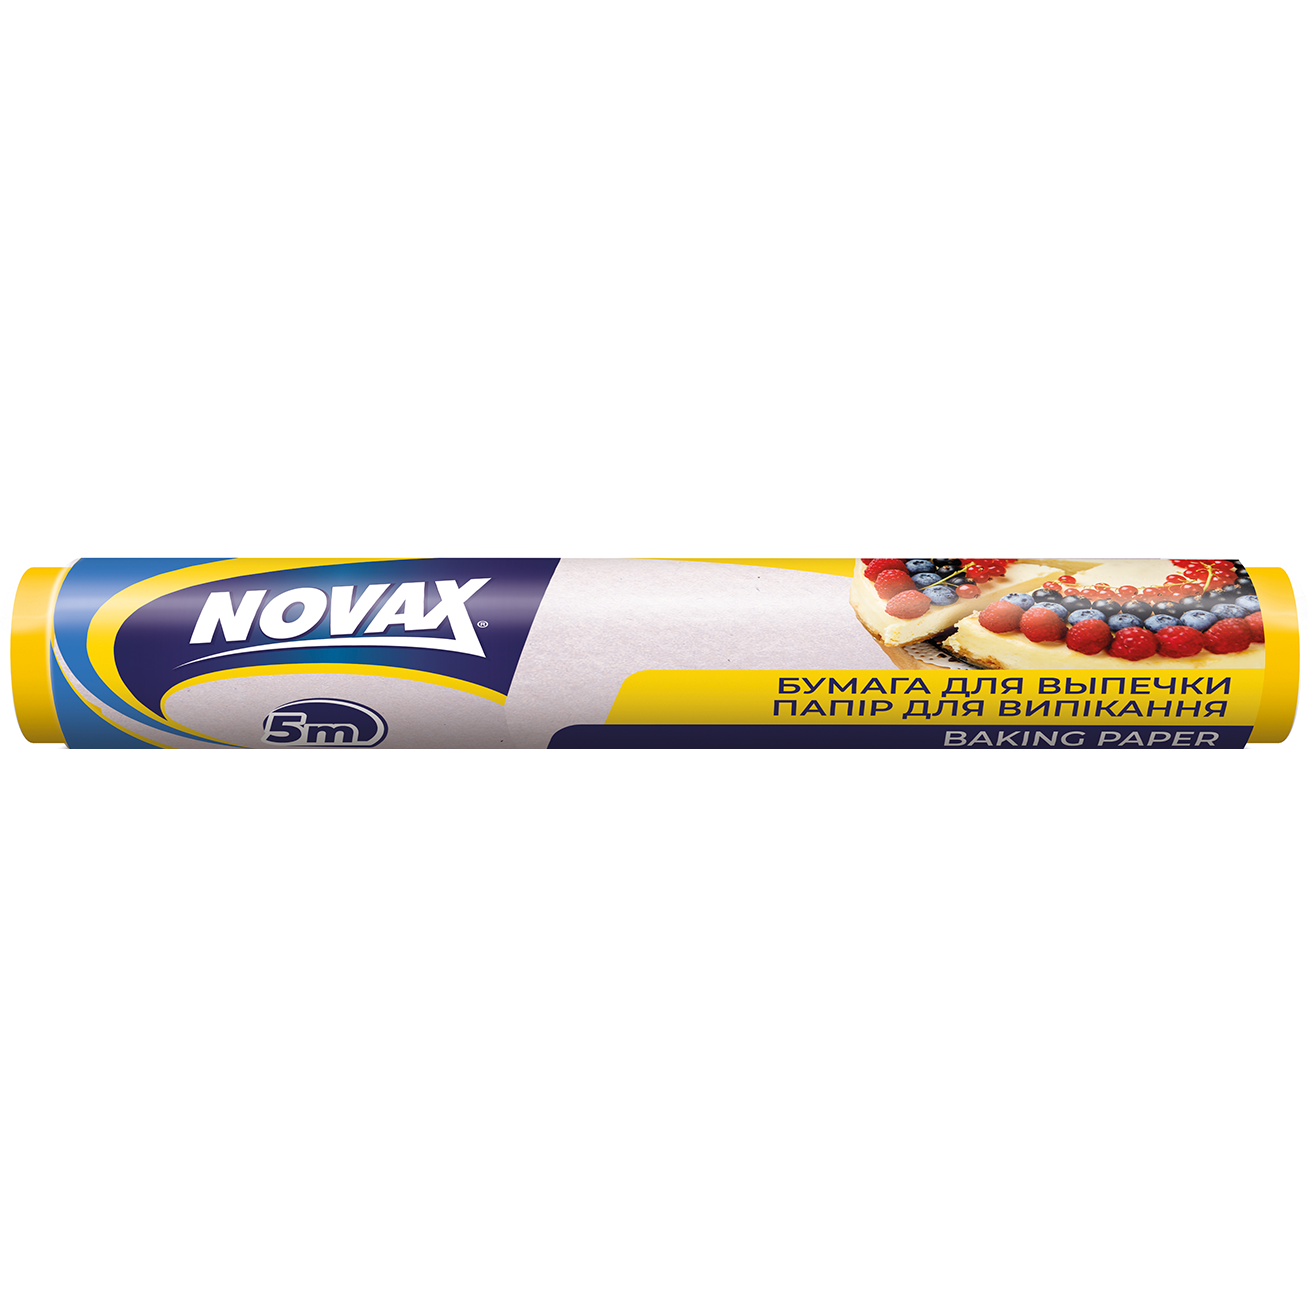 Папір для випічки Novax, 5 м - фото 1